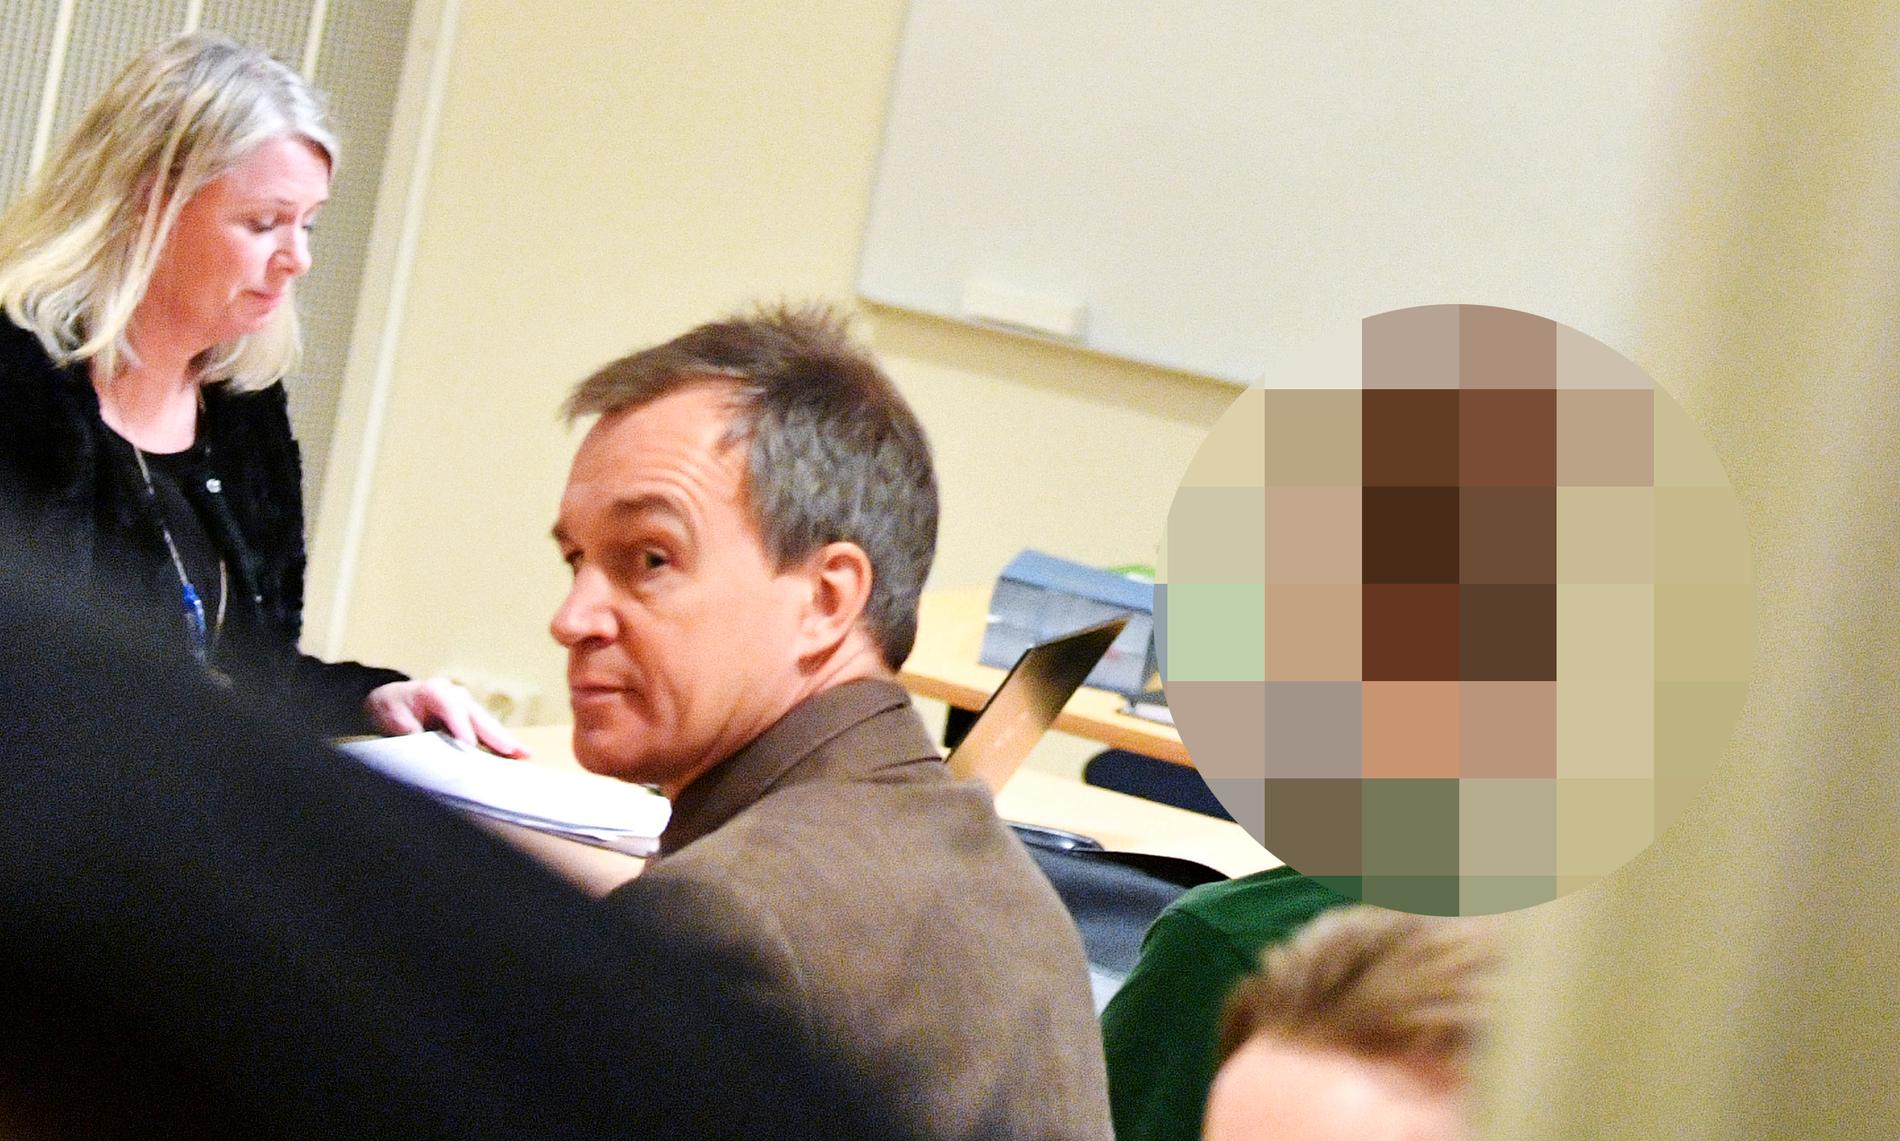 Den man som misstänks för sprängdådet på en skola i Hässleholm har häktats. På bilden syns försvarsadvokaten Torgny Dahlberg (mitten) tillsammans med mannen.